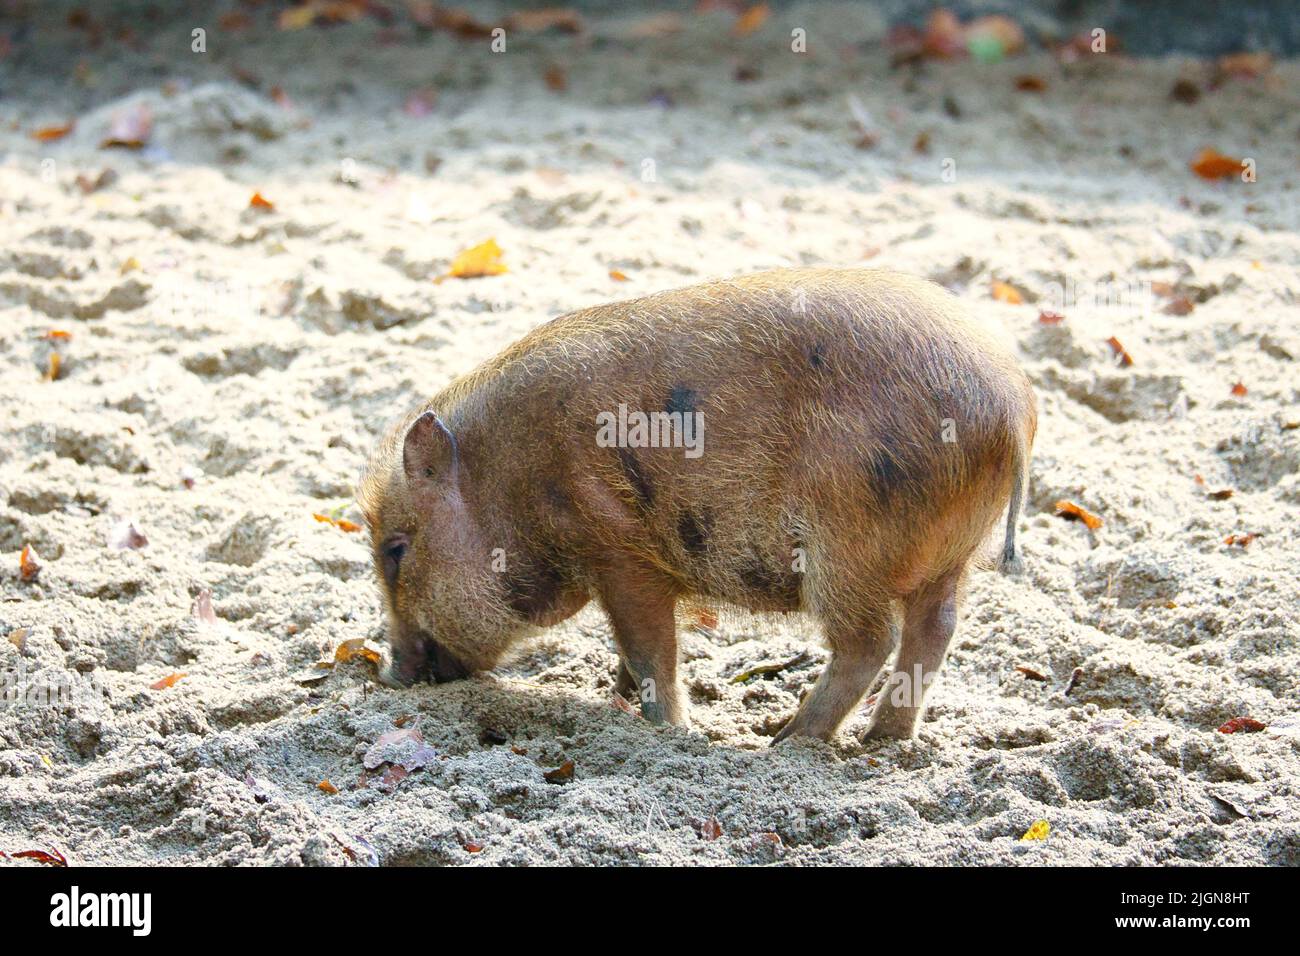 Taubenbauchferkel, im Sand graben. Hausschwein für die Fleischproduktion. Nutztier, Säugetier. Tierfoto Stockfoto